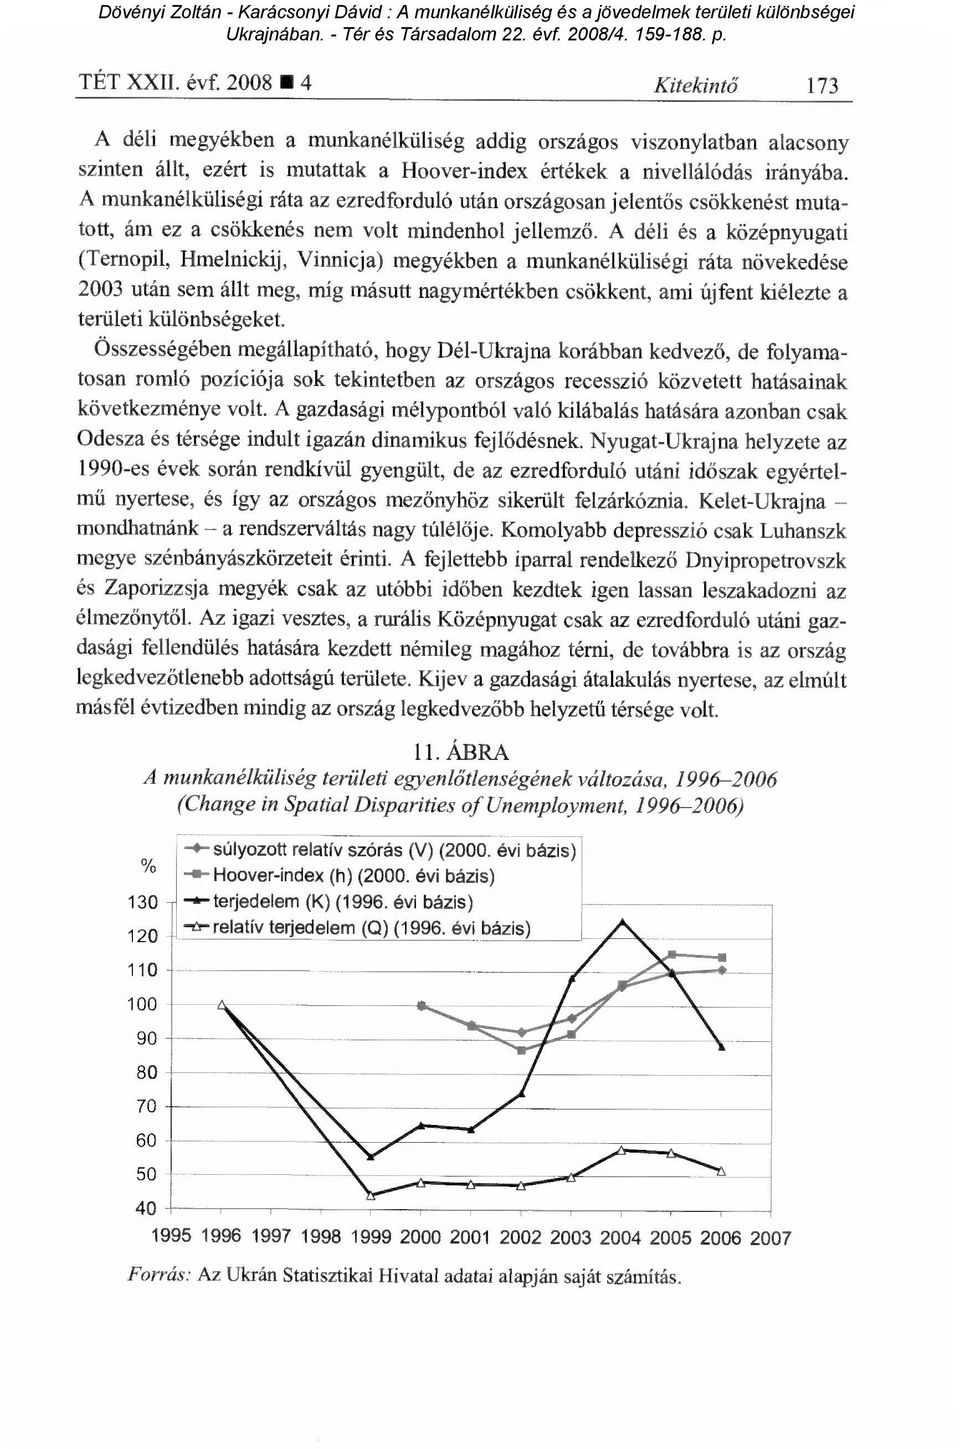 A déli és a középnyugati (Ternopil, Hmelnickij, Vinnicja) megyékben a munkanélküliségi ráta növekedése 2003 után sem állt meg, míg másutt nagymértékben csökkent, ami újfent kiélezte a területi